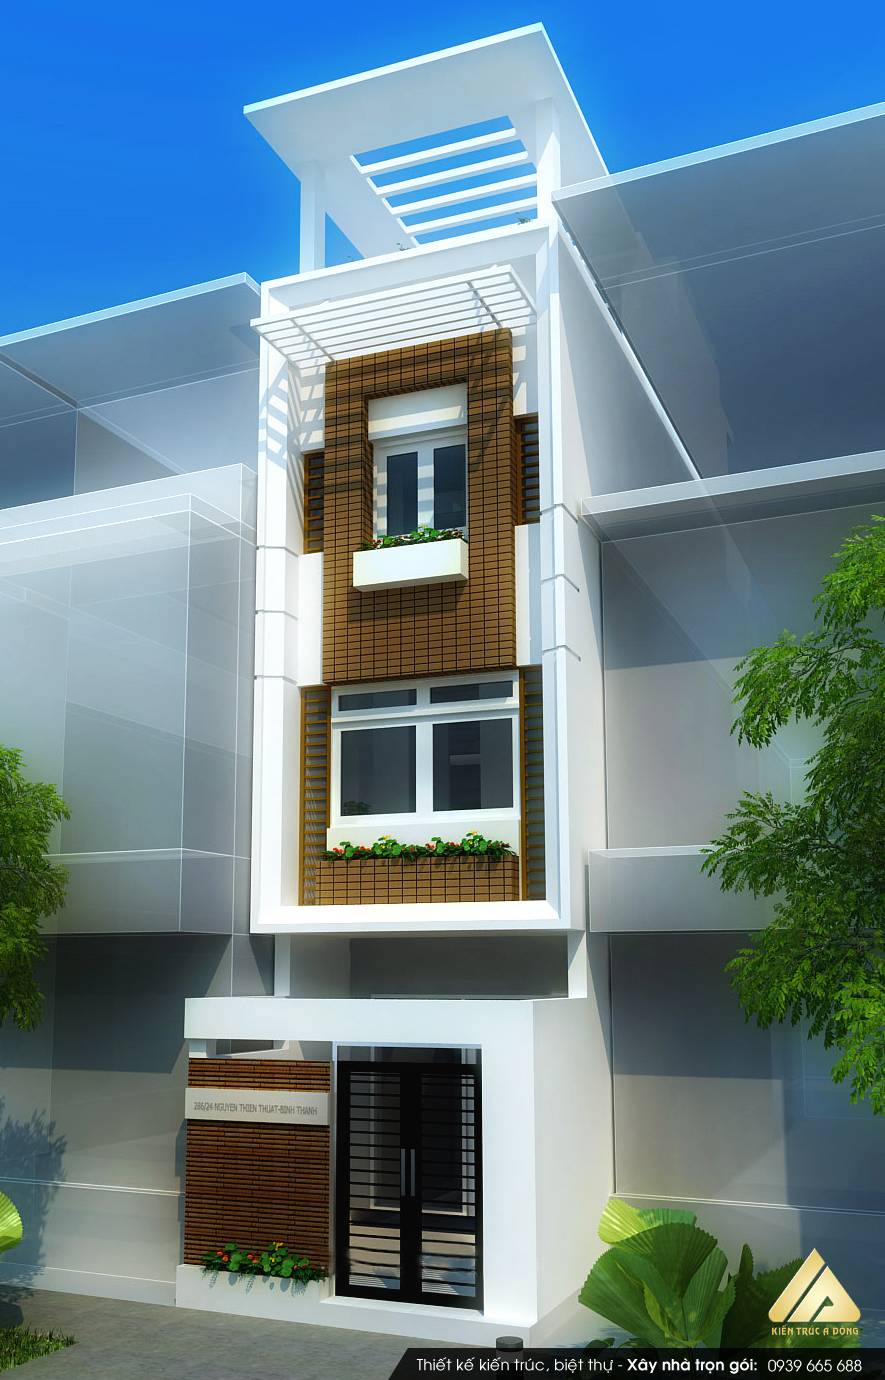 Mê mẩn mẫu nhà phố 3 tầng hiện đại ưa chuộng nhất > Thiết kế nhà phố 3 tầng hiện đại, sang trọng